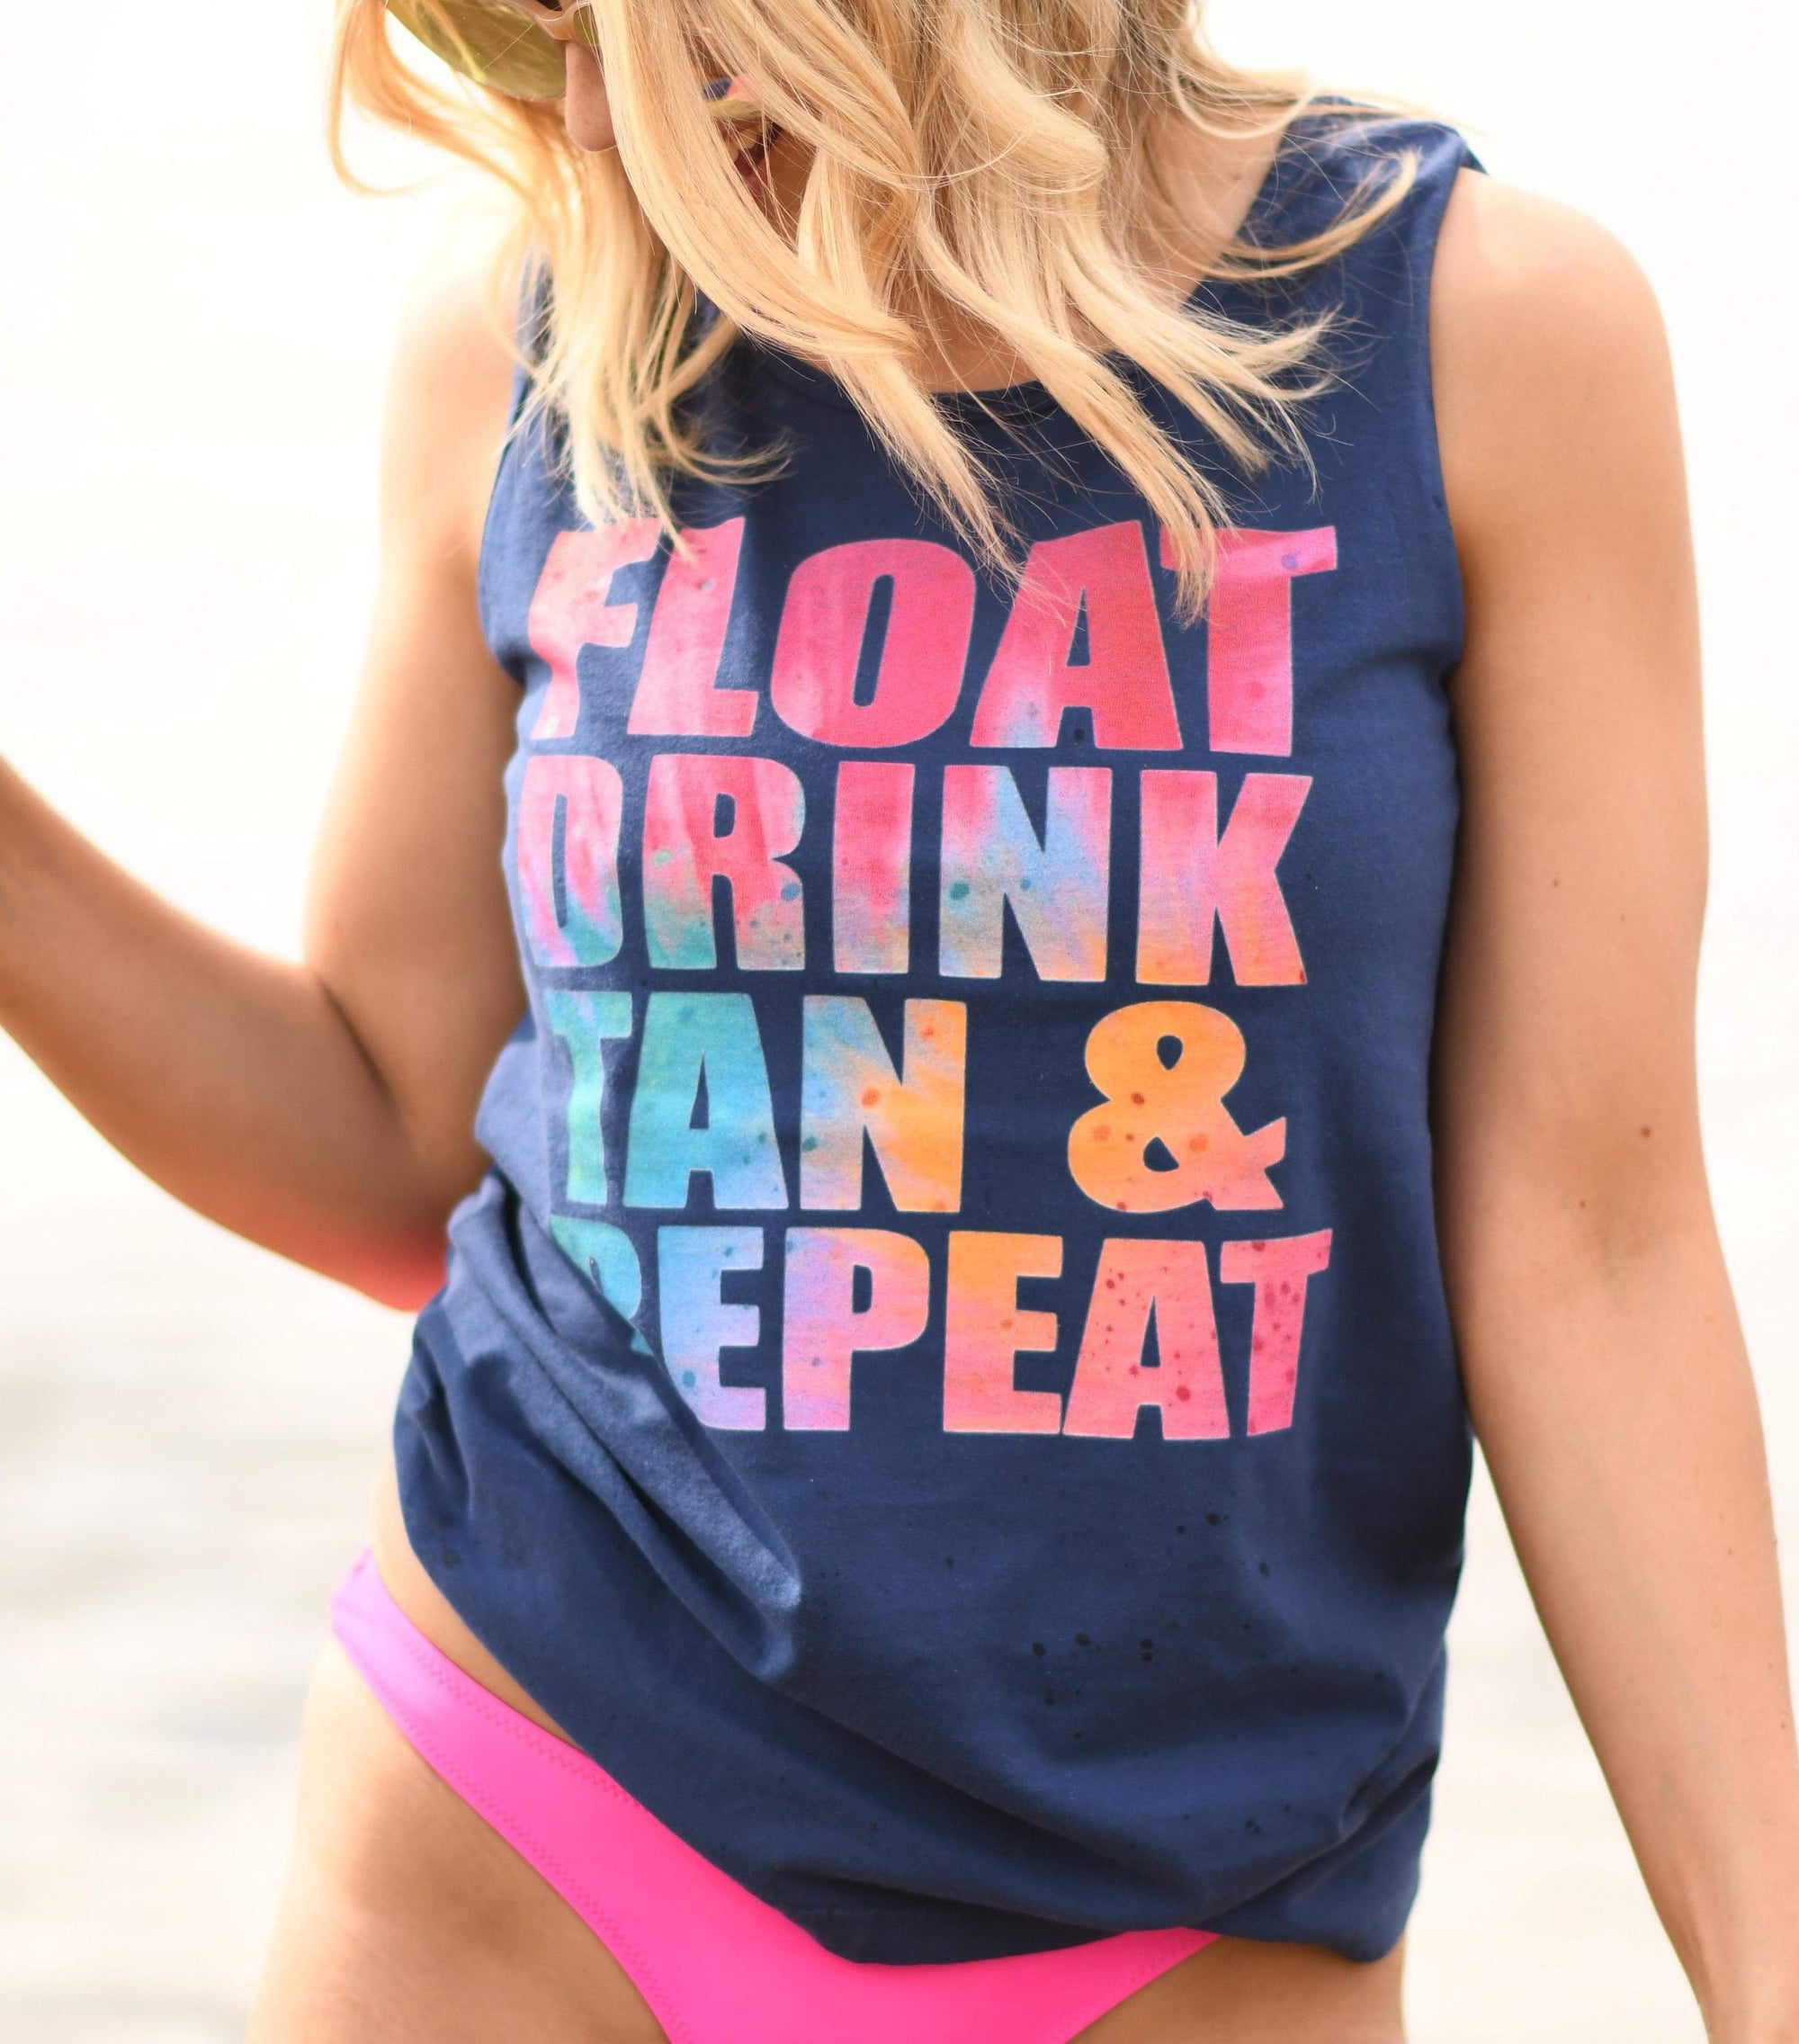 Float Drink Tan Repeat